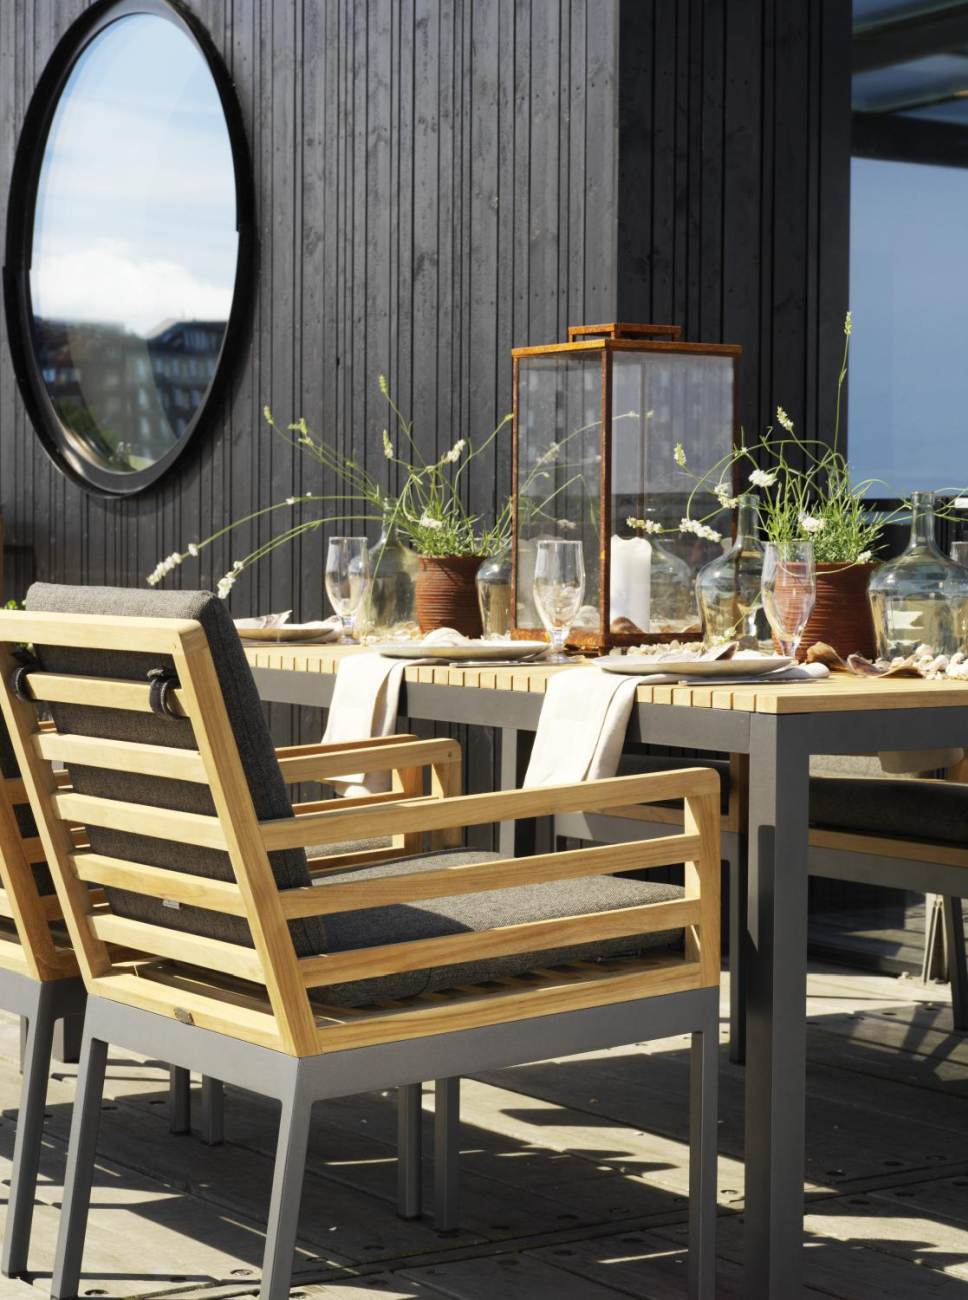 Der Gartenesstisch Zalongo überzeugt mit seinem modernen Design. Gefertigt wurde die Tischplatte aus Teakholz, welche einen natürlichen Farbton besitzt. Das Gestell ist auch aus Metall und hat eine Anthrazit Farbe. Der Tisch besitzt einen Durchmesser von 